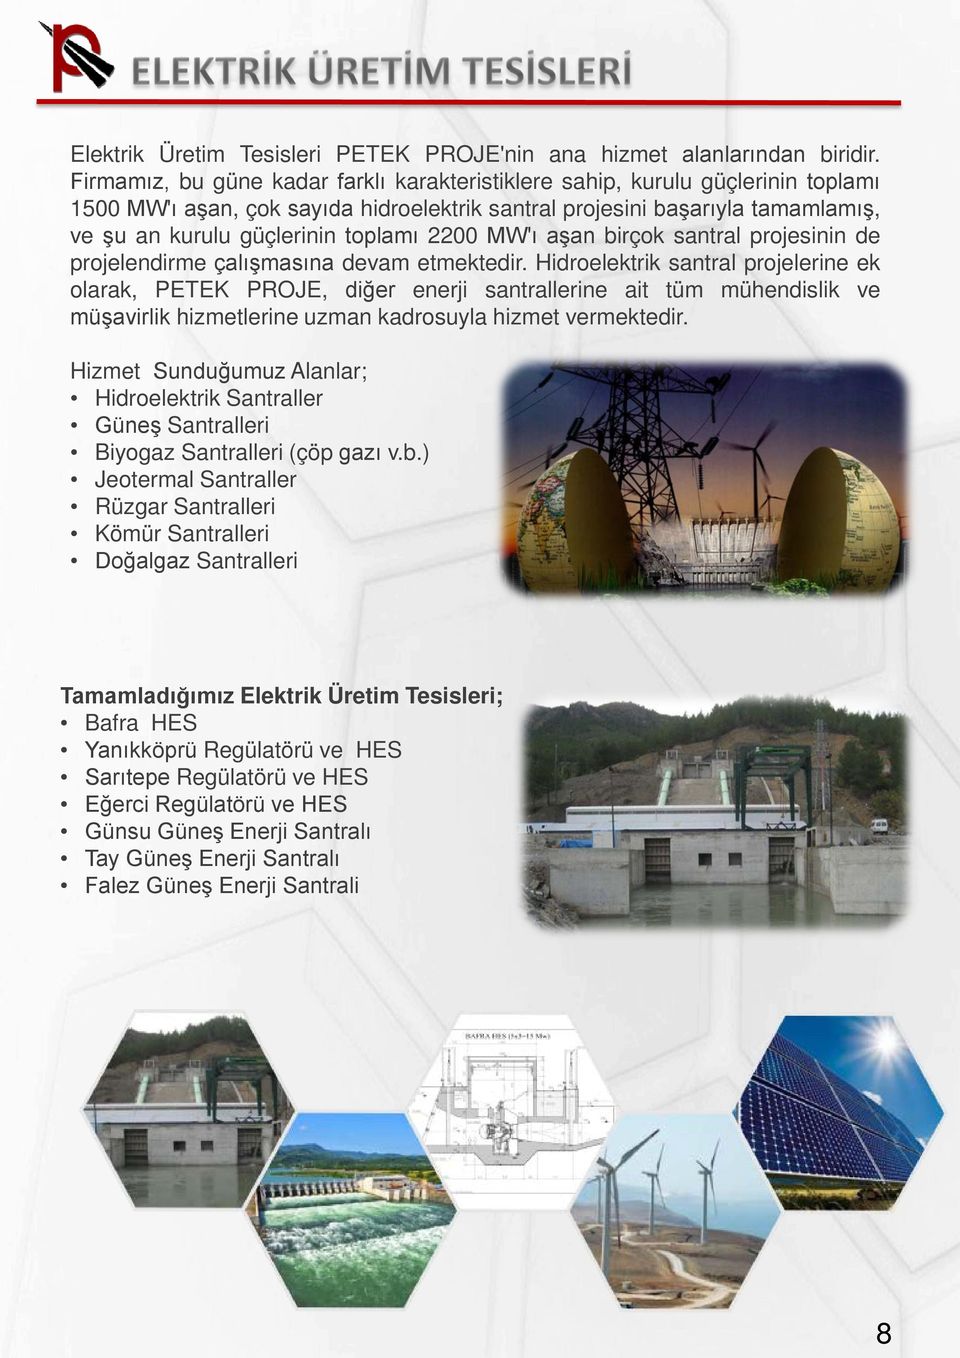 2200 MW'ı aşan birçok santral projesinin de projelendirme çalışmasına devam etmektedir.